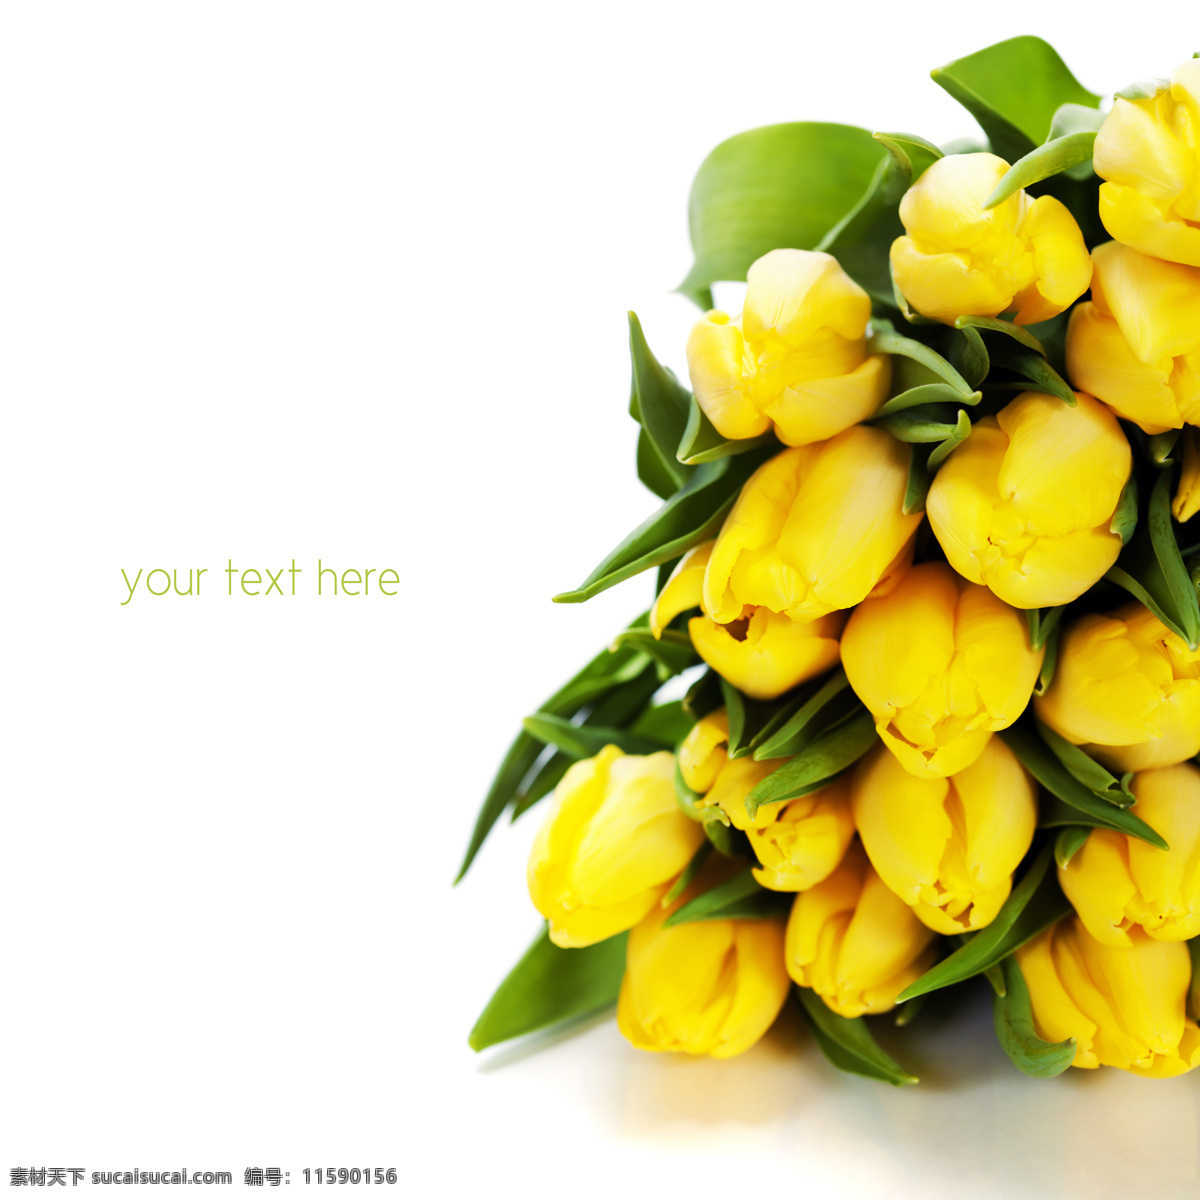 黄色 郁金香 鲜花 花朵 春天花朵 美丽鲜花 花卉 复活节 背景 花草树木 生物世界